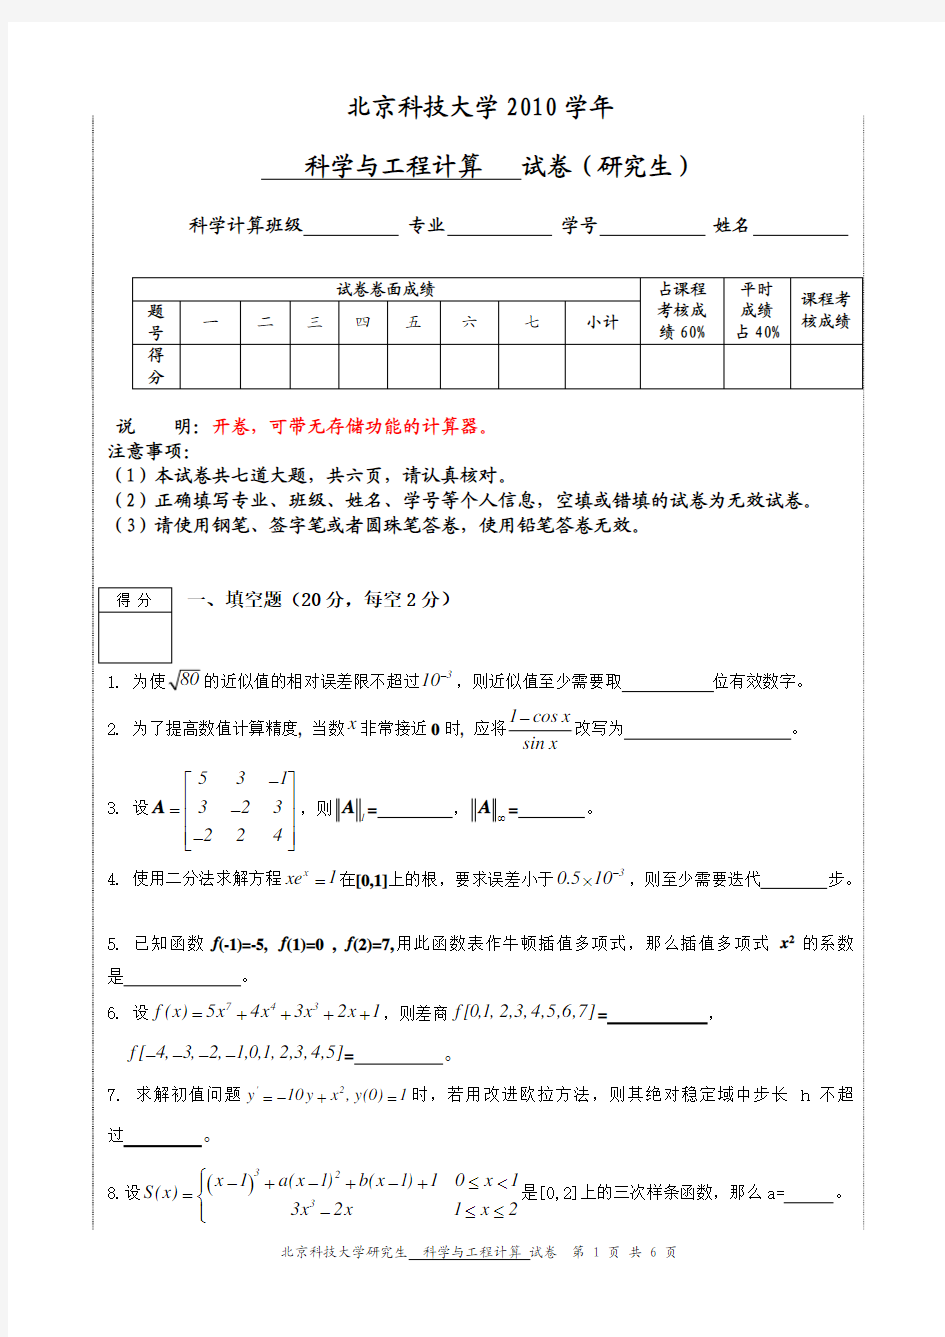 北京科技大学2010年计算方法科学与工程计算试卷